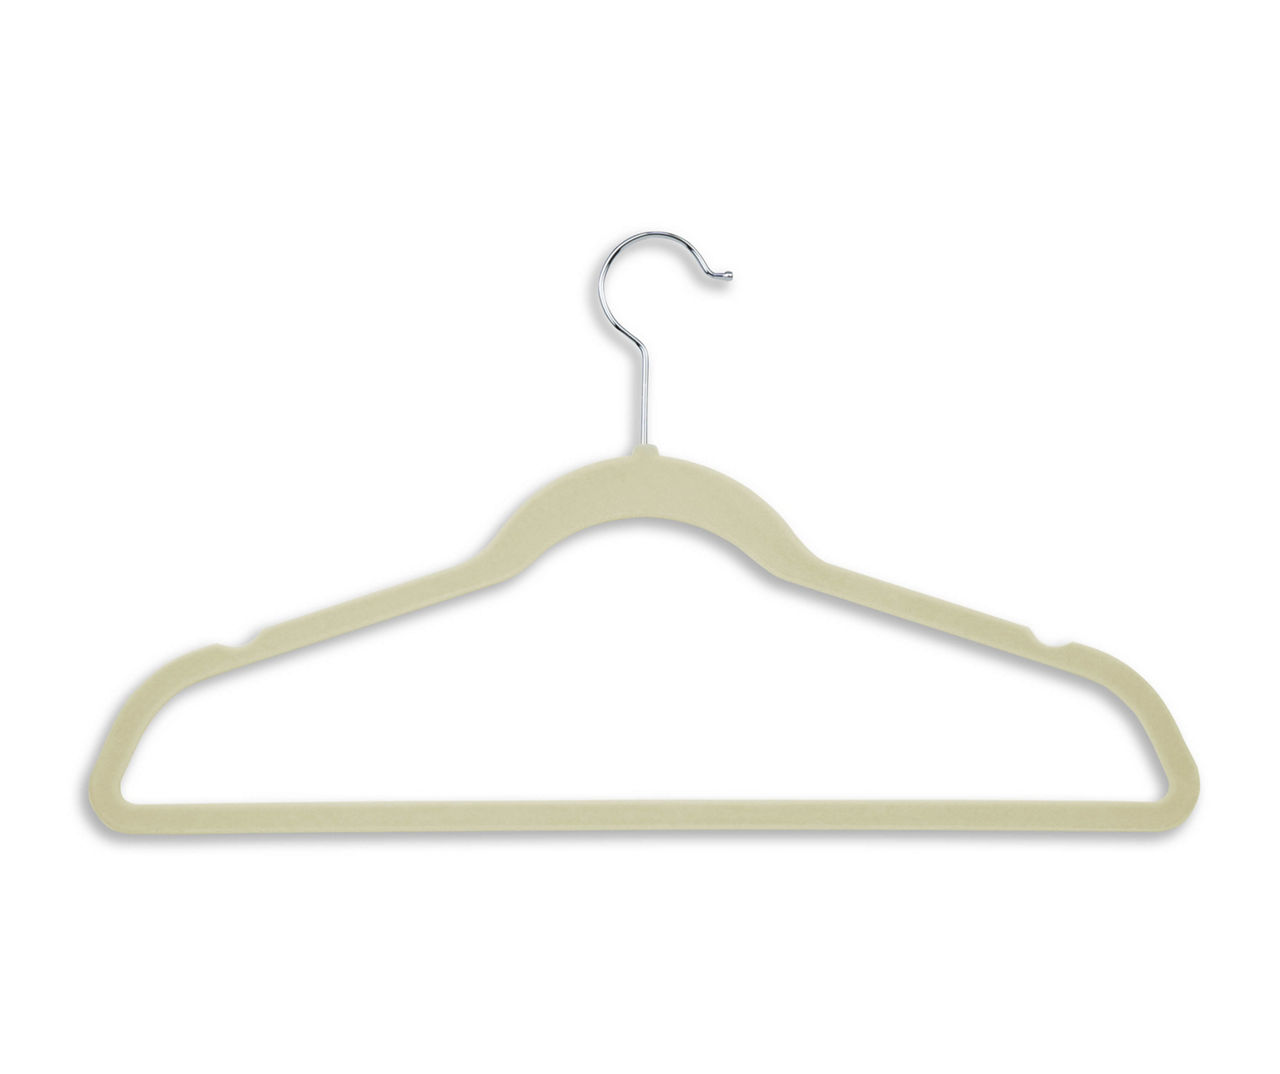 White Slim-Profile Non-Slip Velvet Hangers